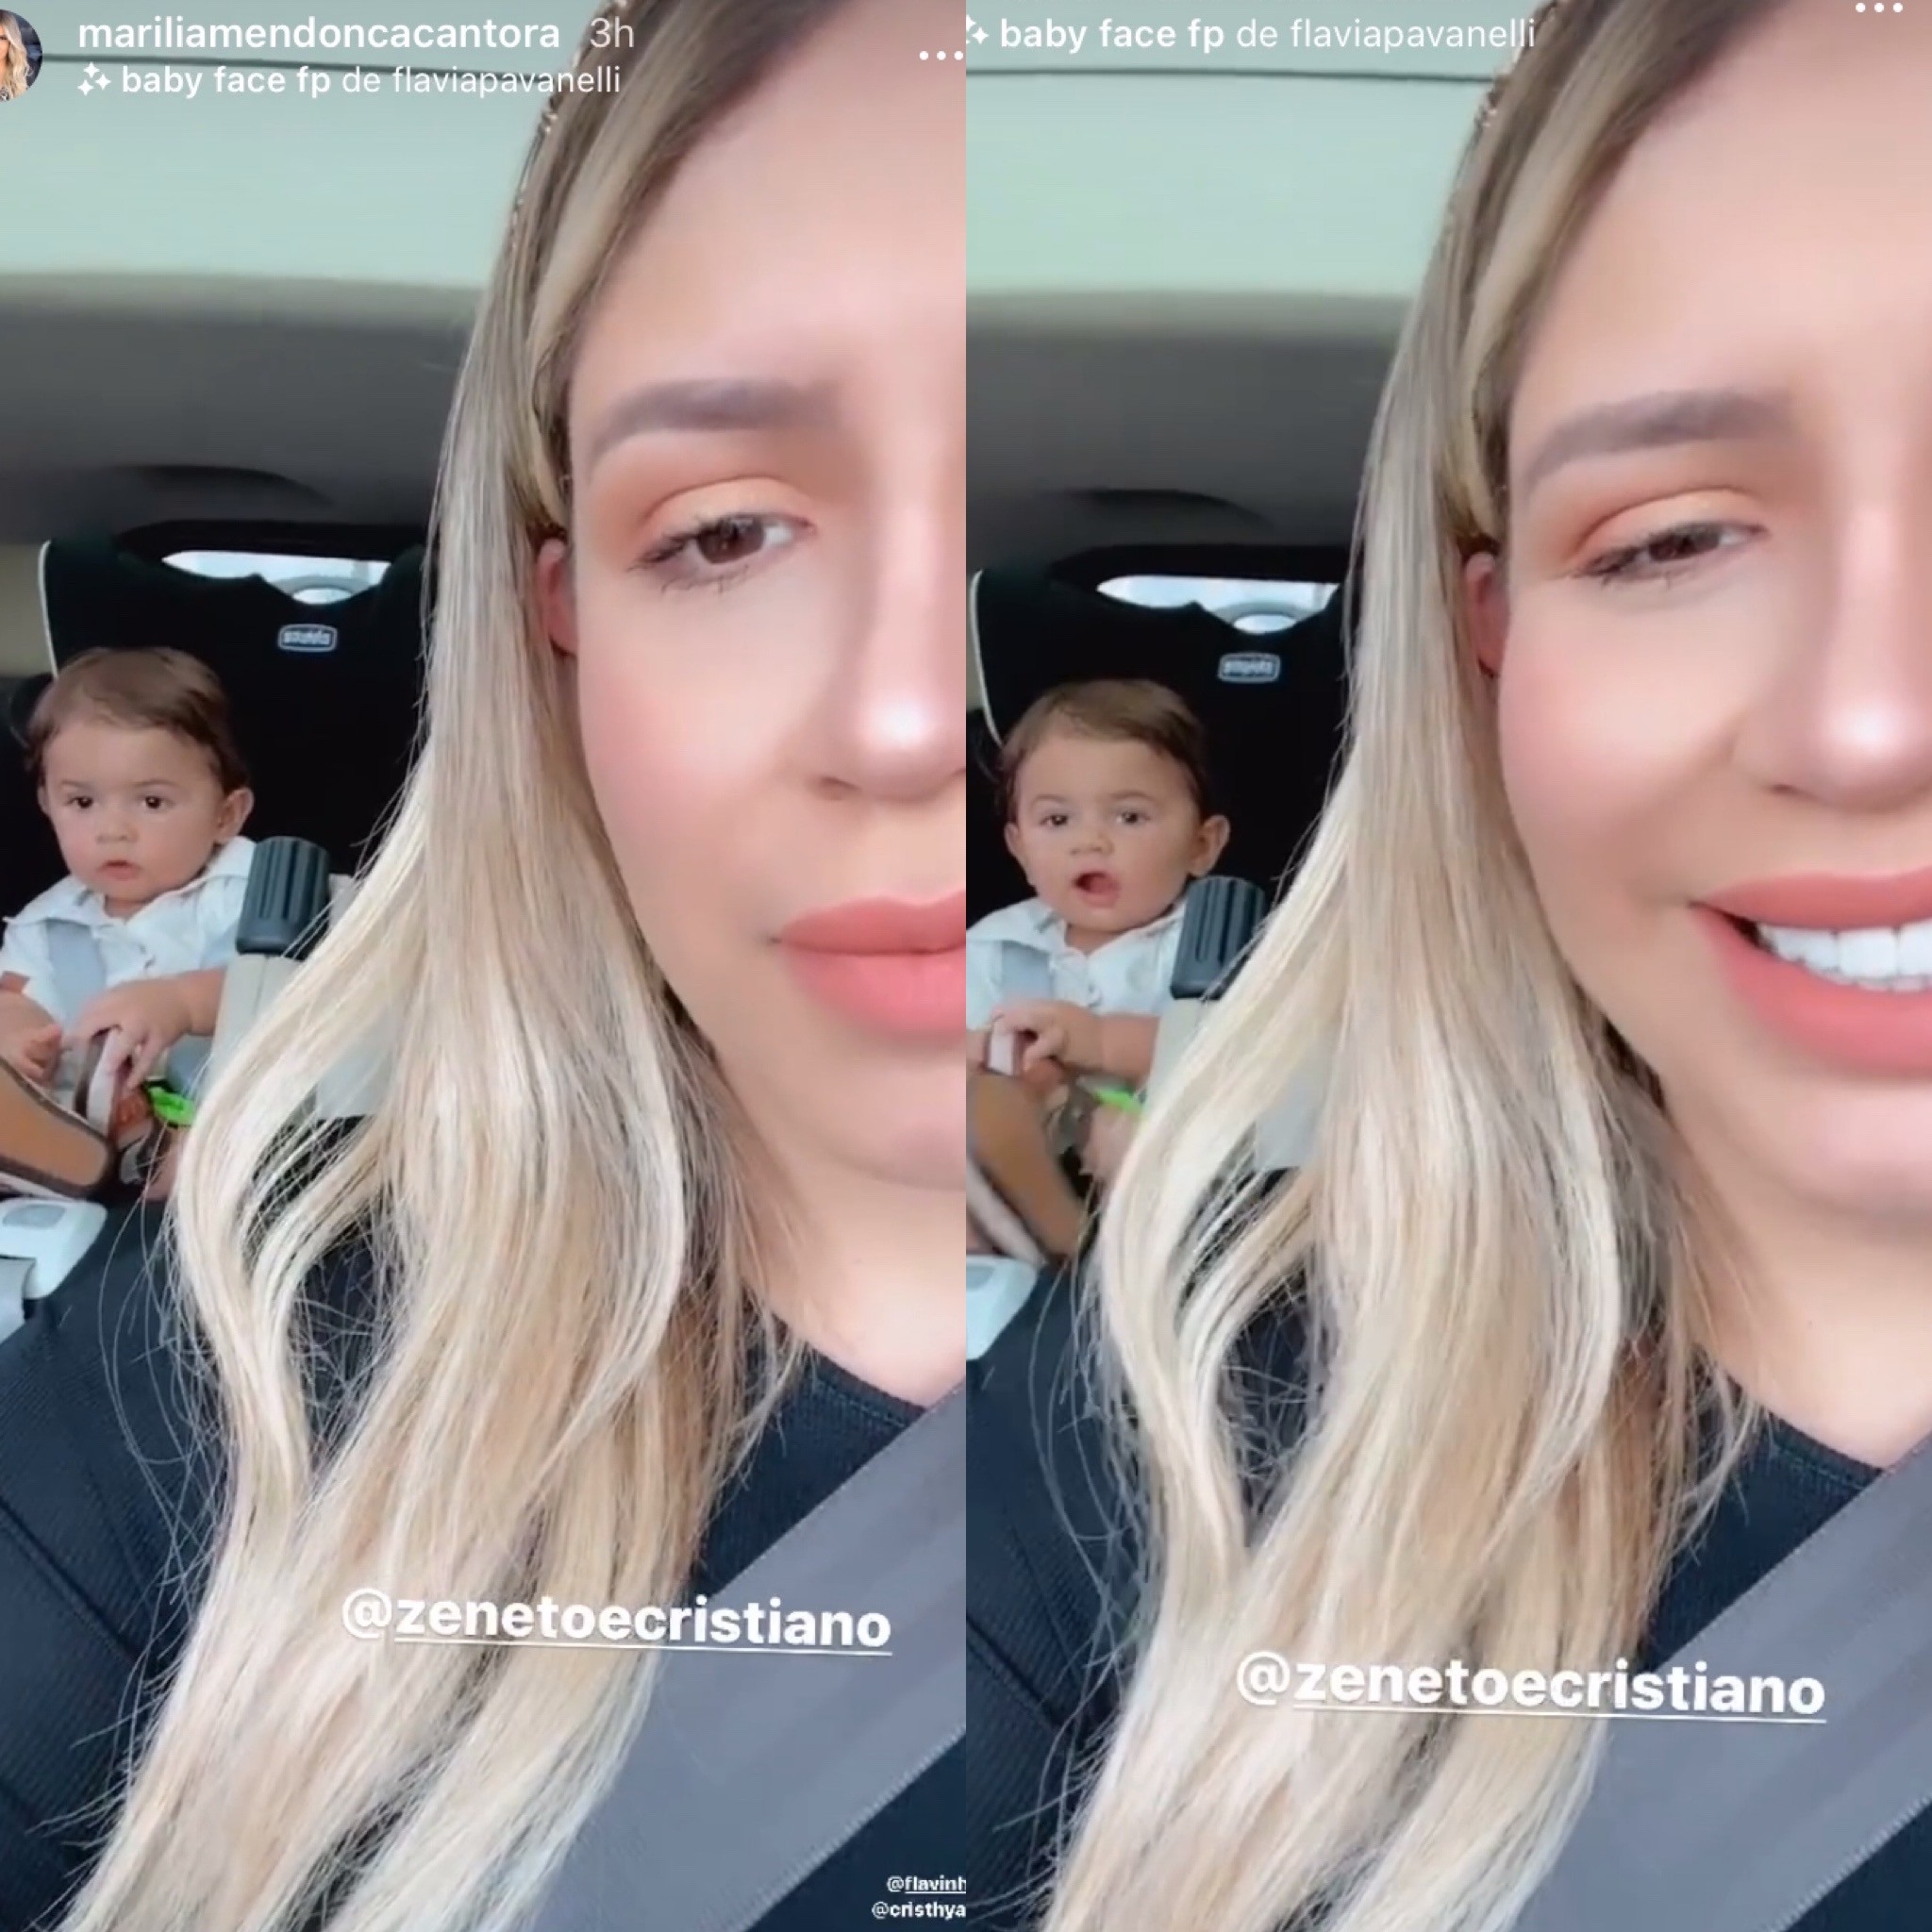 Marília Mendonça grava filho entoando música da dupla Zé Neto & Cristiano: ''Meu cantor'' (Foto: Instagram)